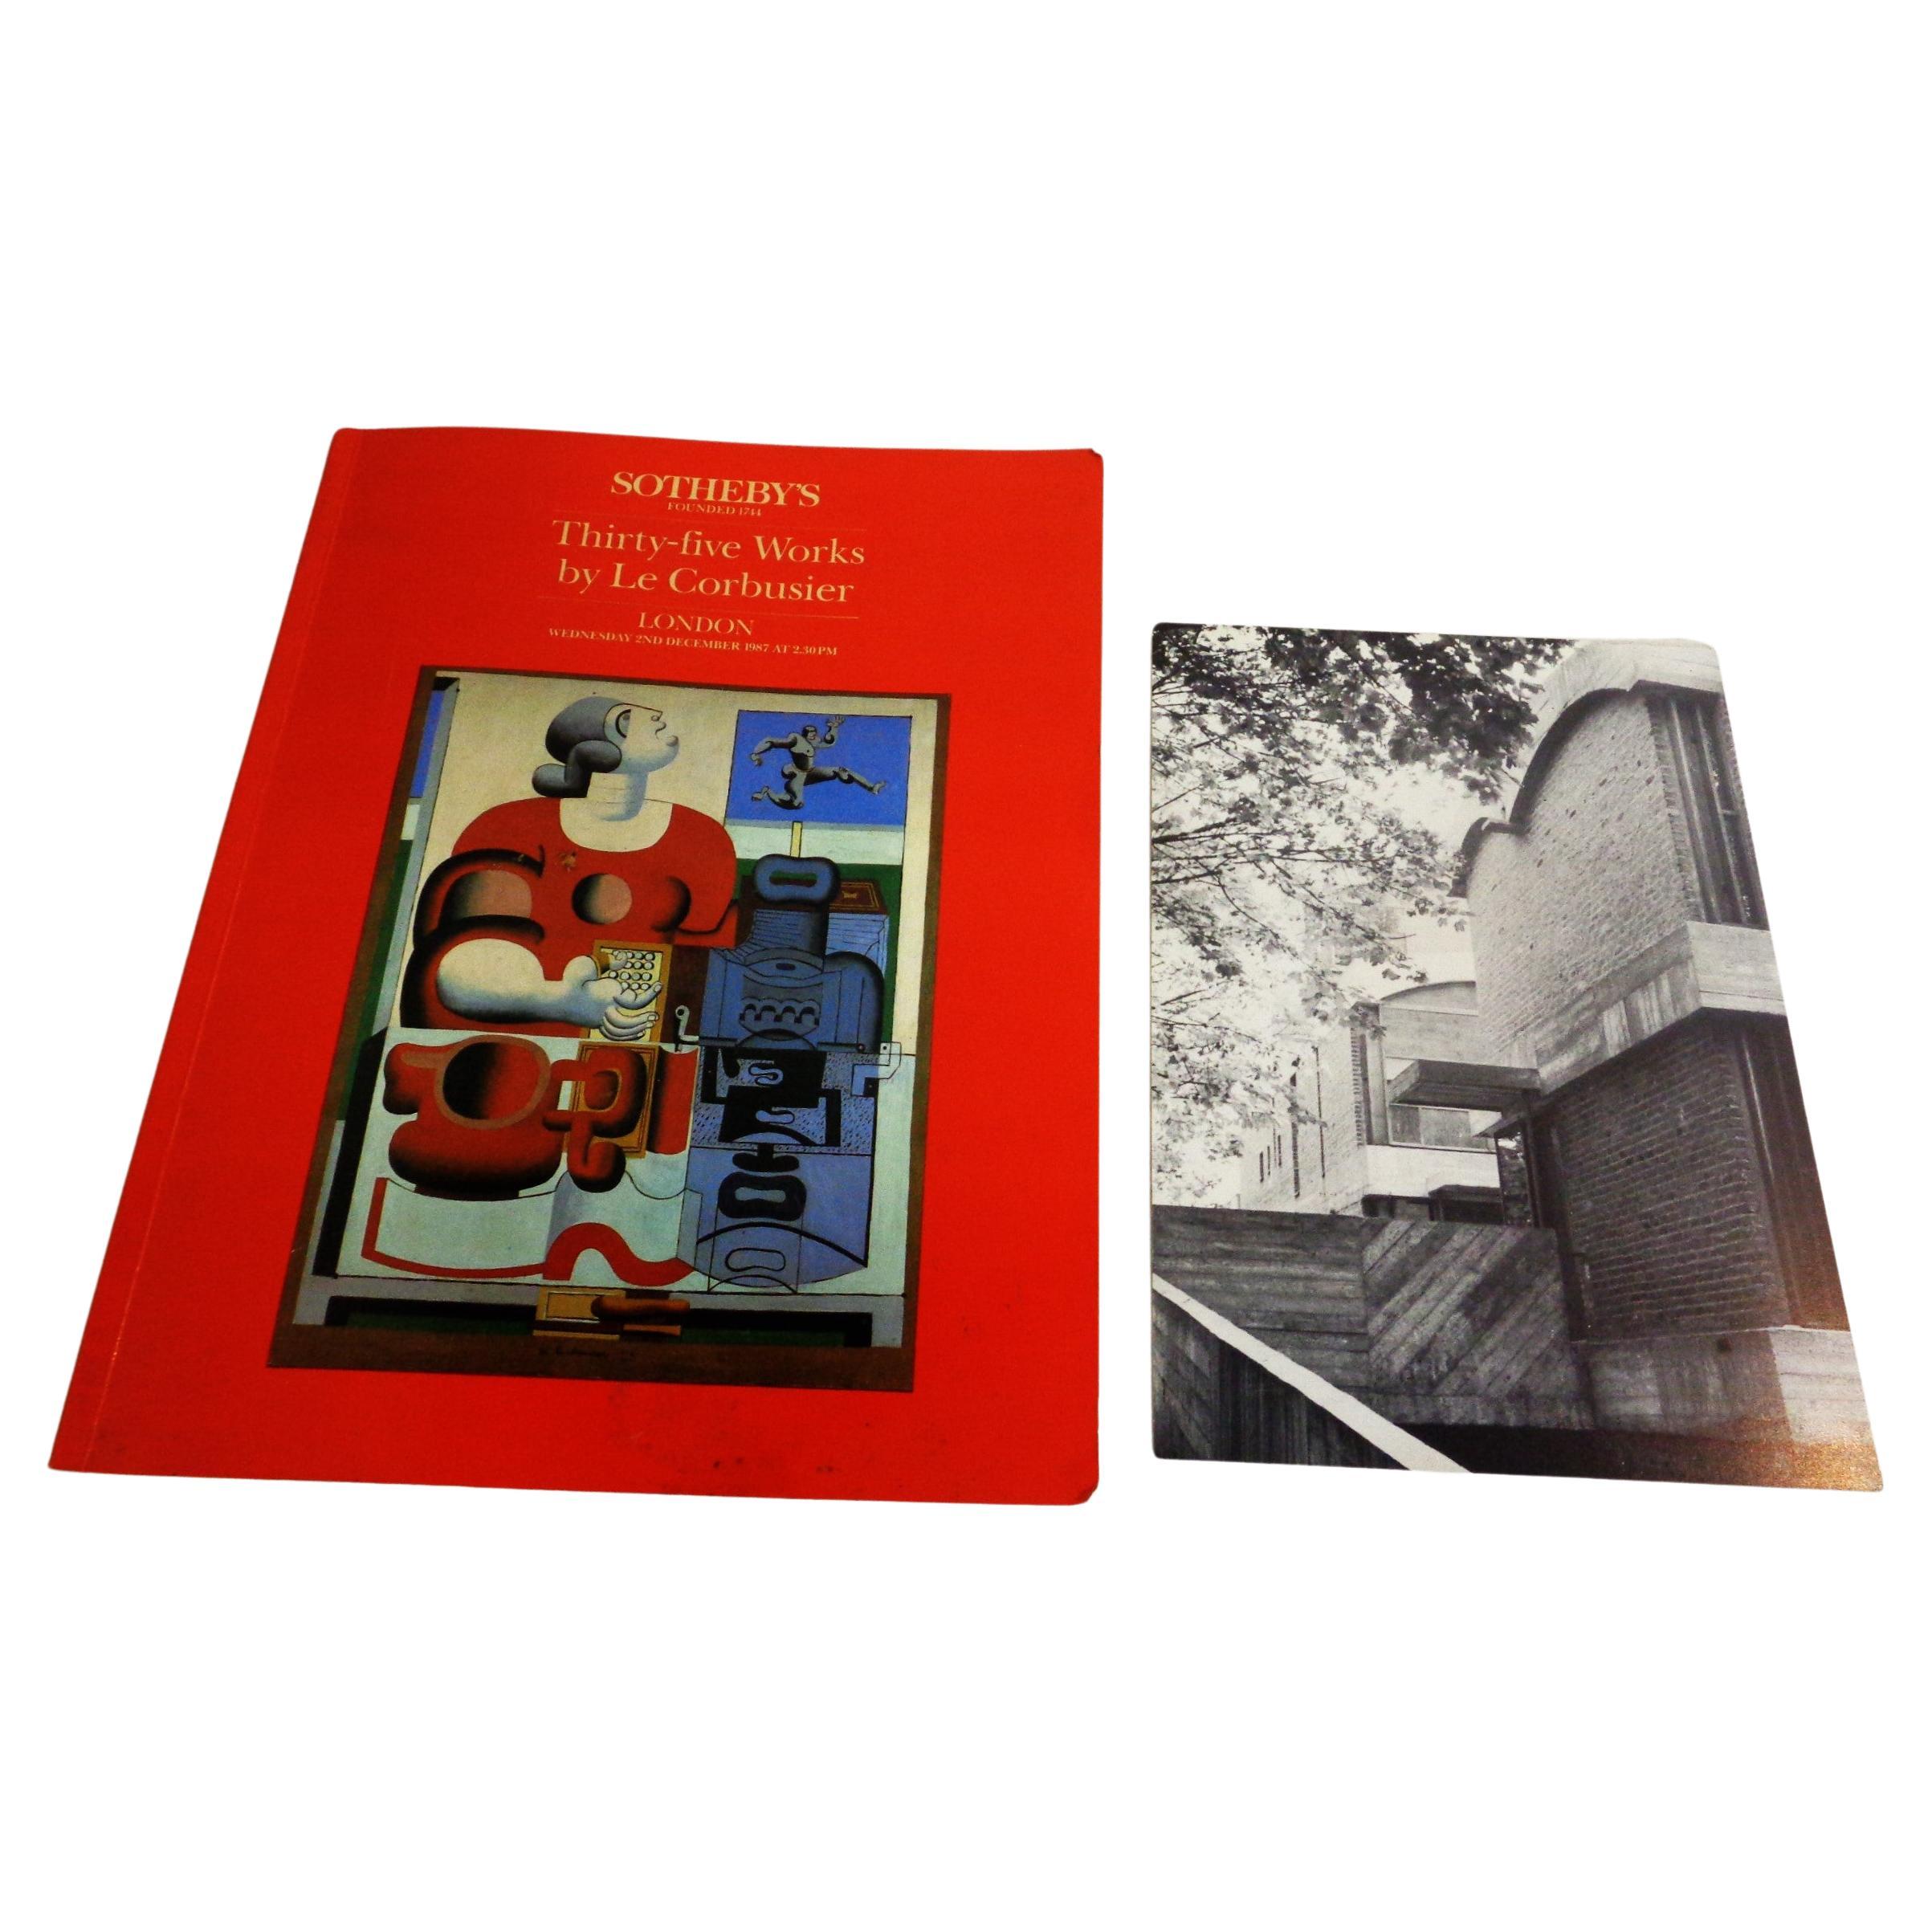 Fünfunddreißig Werke von Le Corbusier - 8. Dezember 1987 Sotheby's, London - Softcover-Auktionskatalog mit Karte - Sotheby's International Realty & Le Corbusier  - Les Maisons Jaoul, Neuilly-sur-Seine, Paris. 56 Seiten mit 35 s/w und farbig